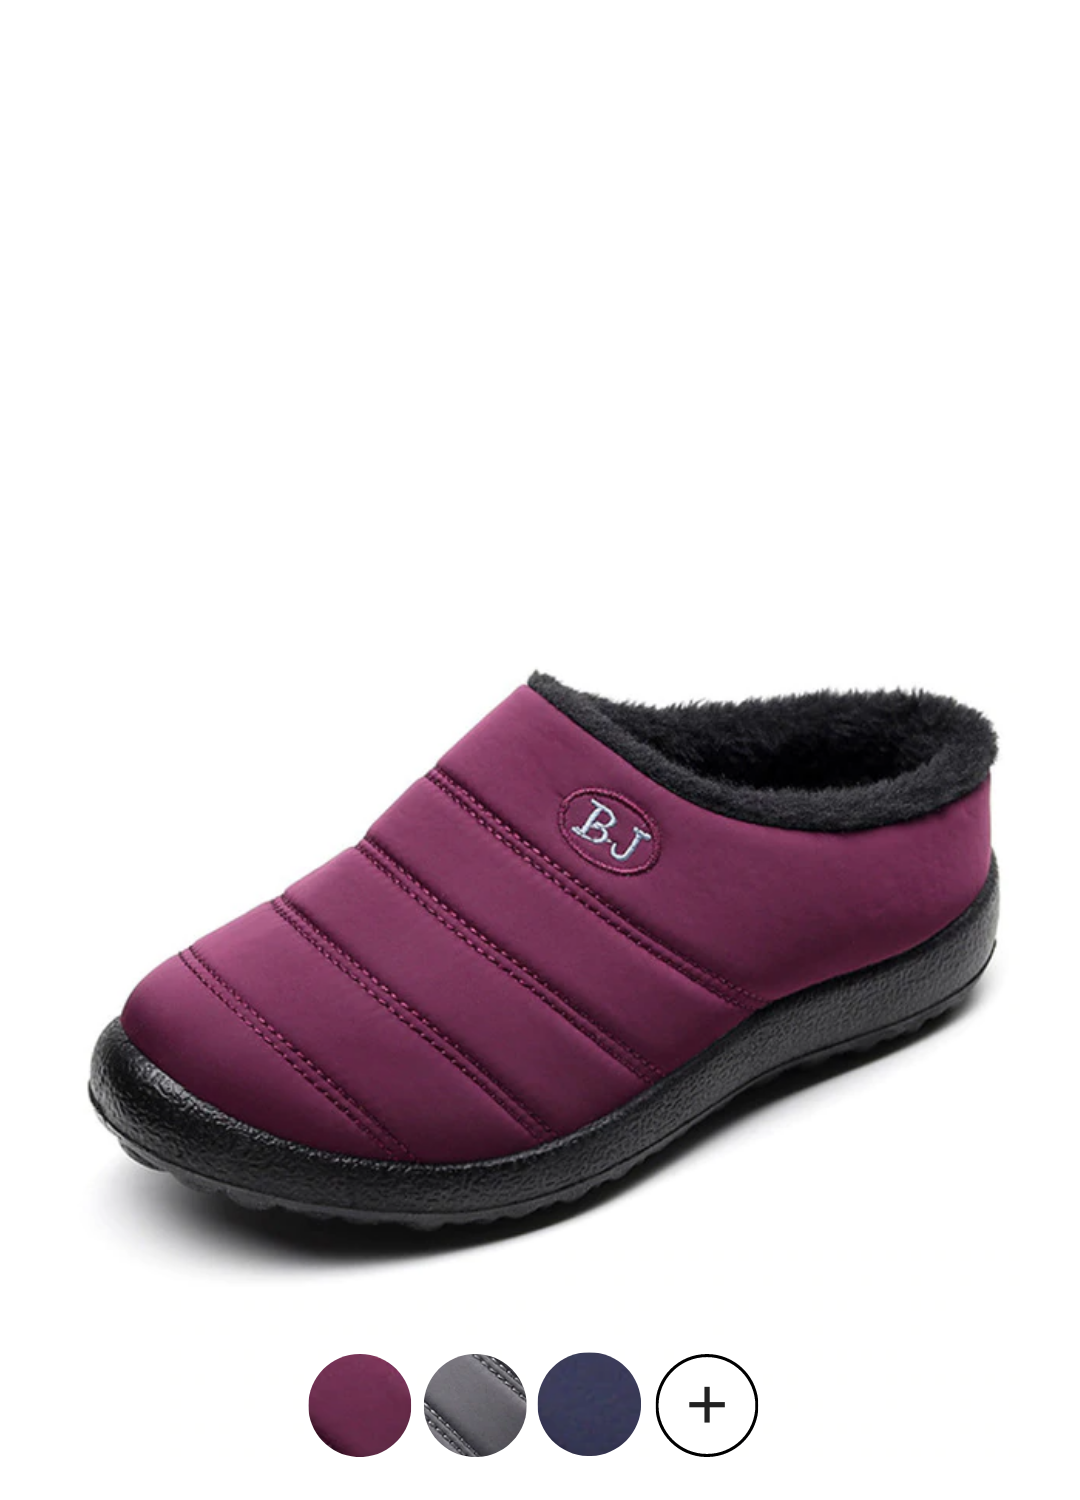 Hands-Free Women's Slippers Indoor Outdoor | Ultrasellershoes.com ...